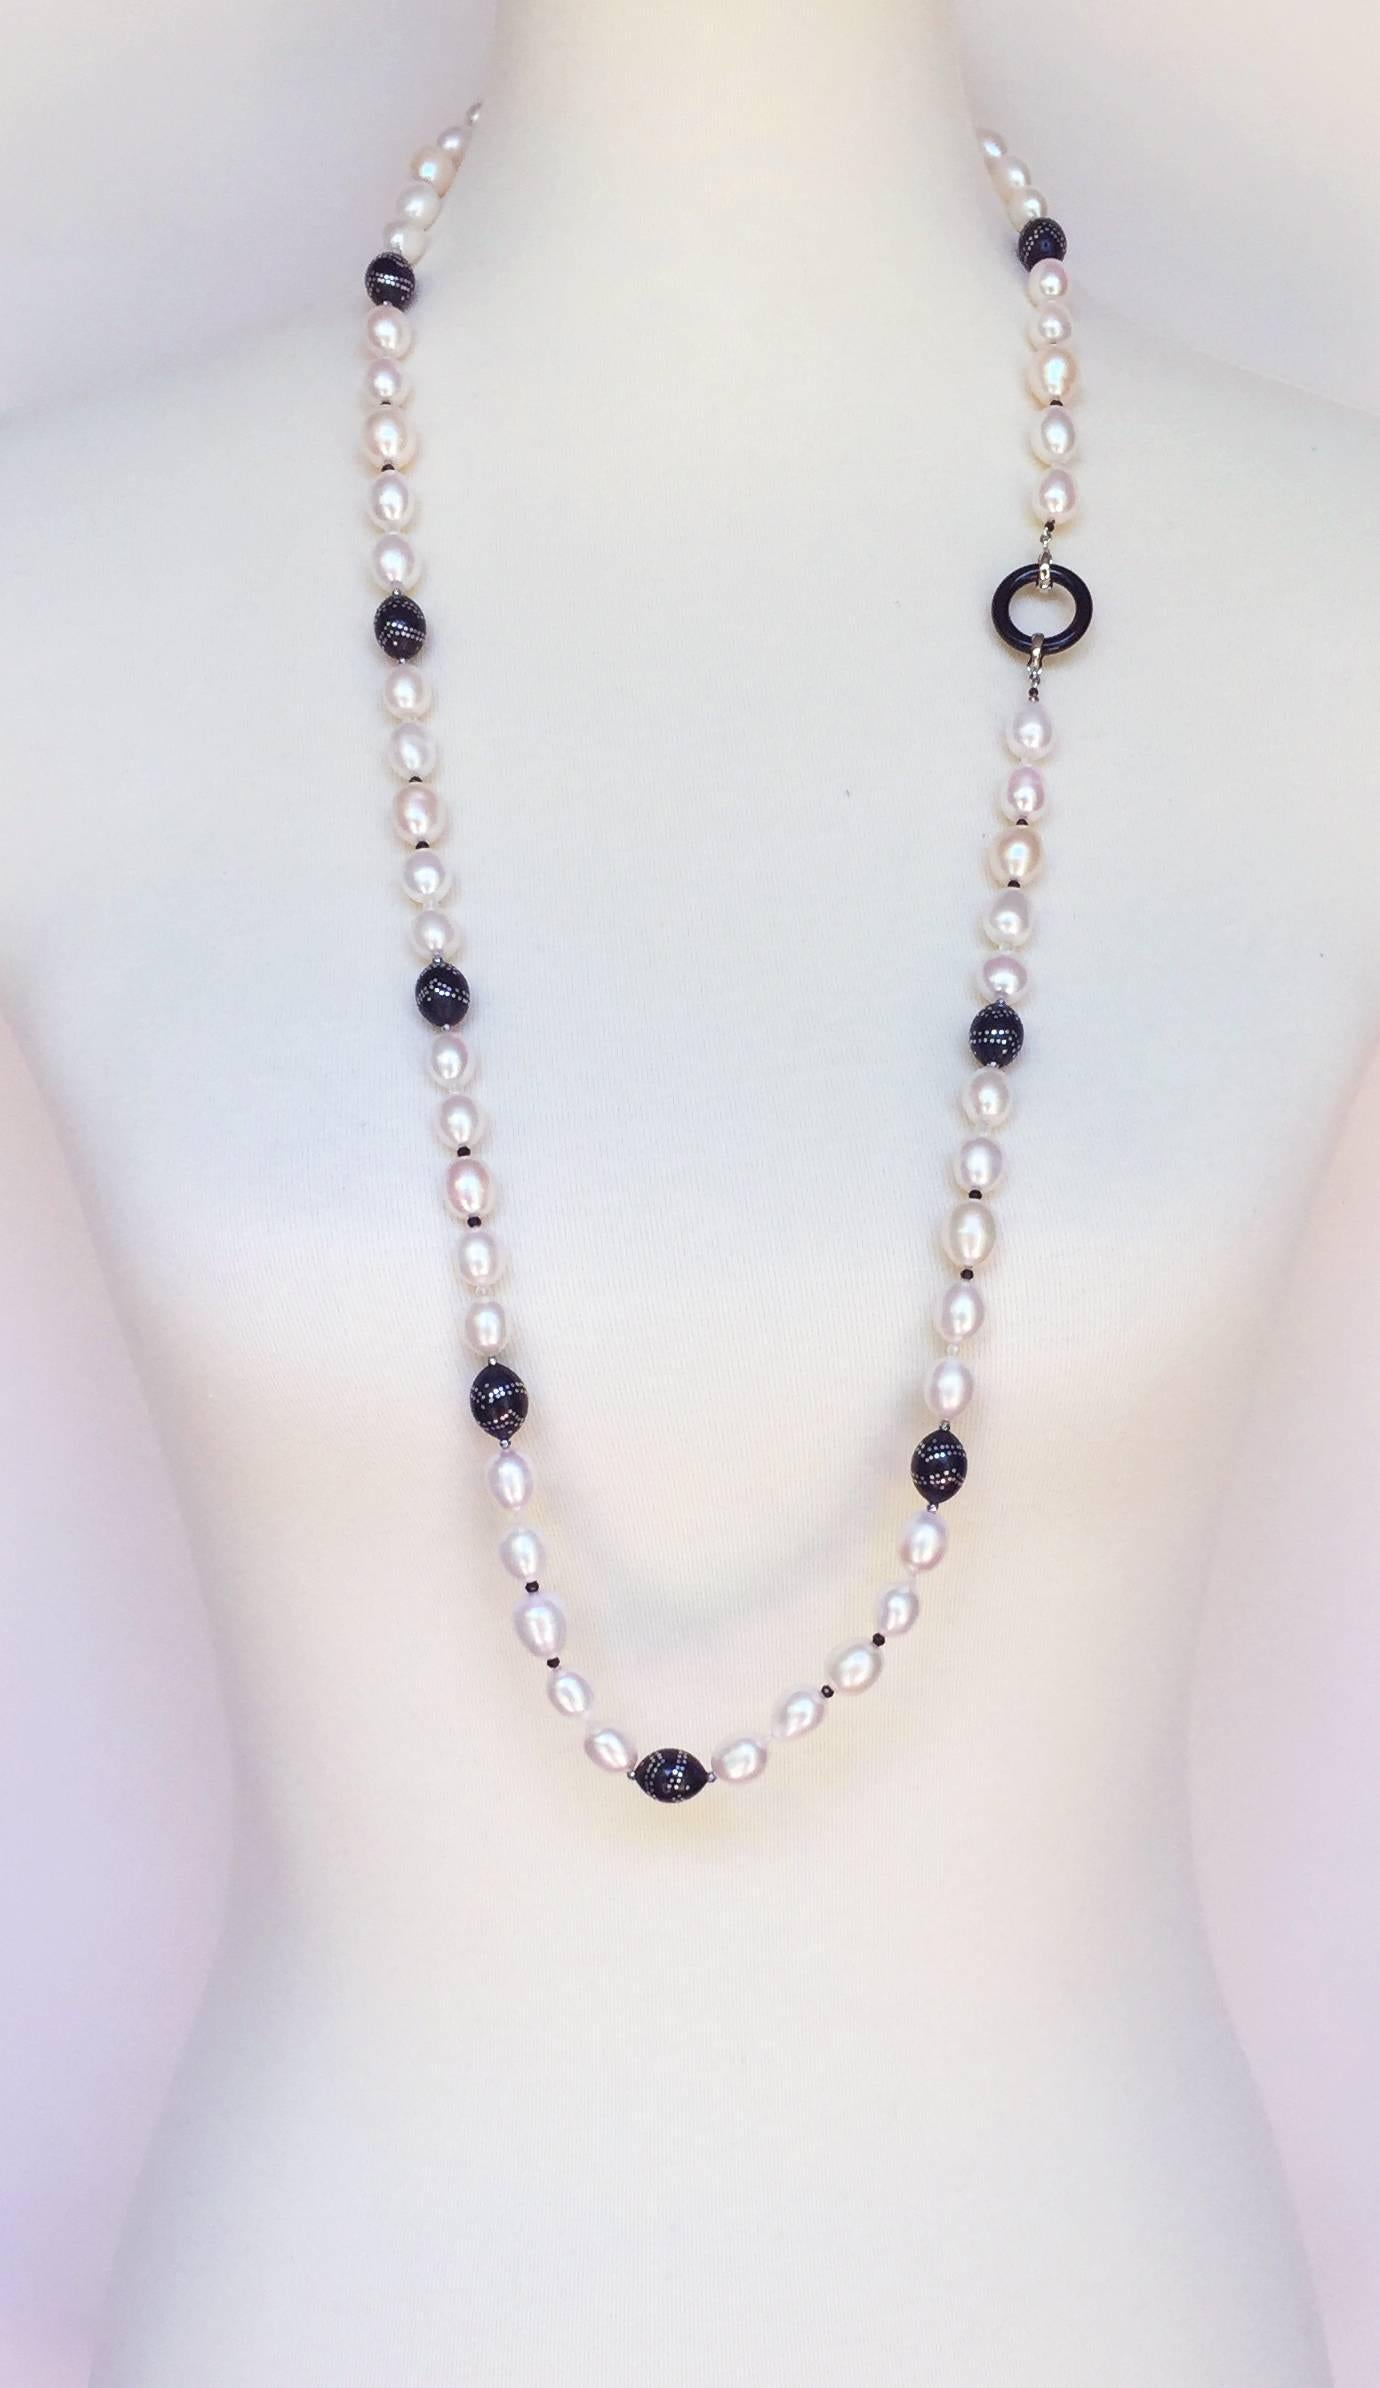 Diese Halskette besteht aus großen ovalen Perlen, die mit handgefertigten antiken Holzperlen mit Silbereinlage verziert sind. Die abnehmbare Quaste zeichnet sich durch eine große Perle aus, die auf einer mit Diamanten besetzten Rhondelle und einer